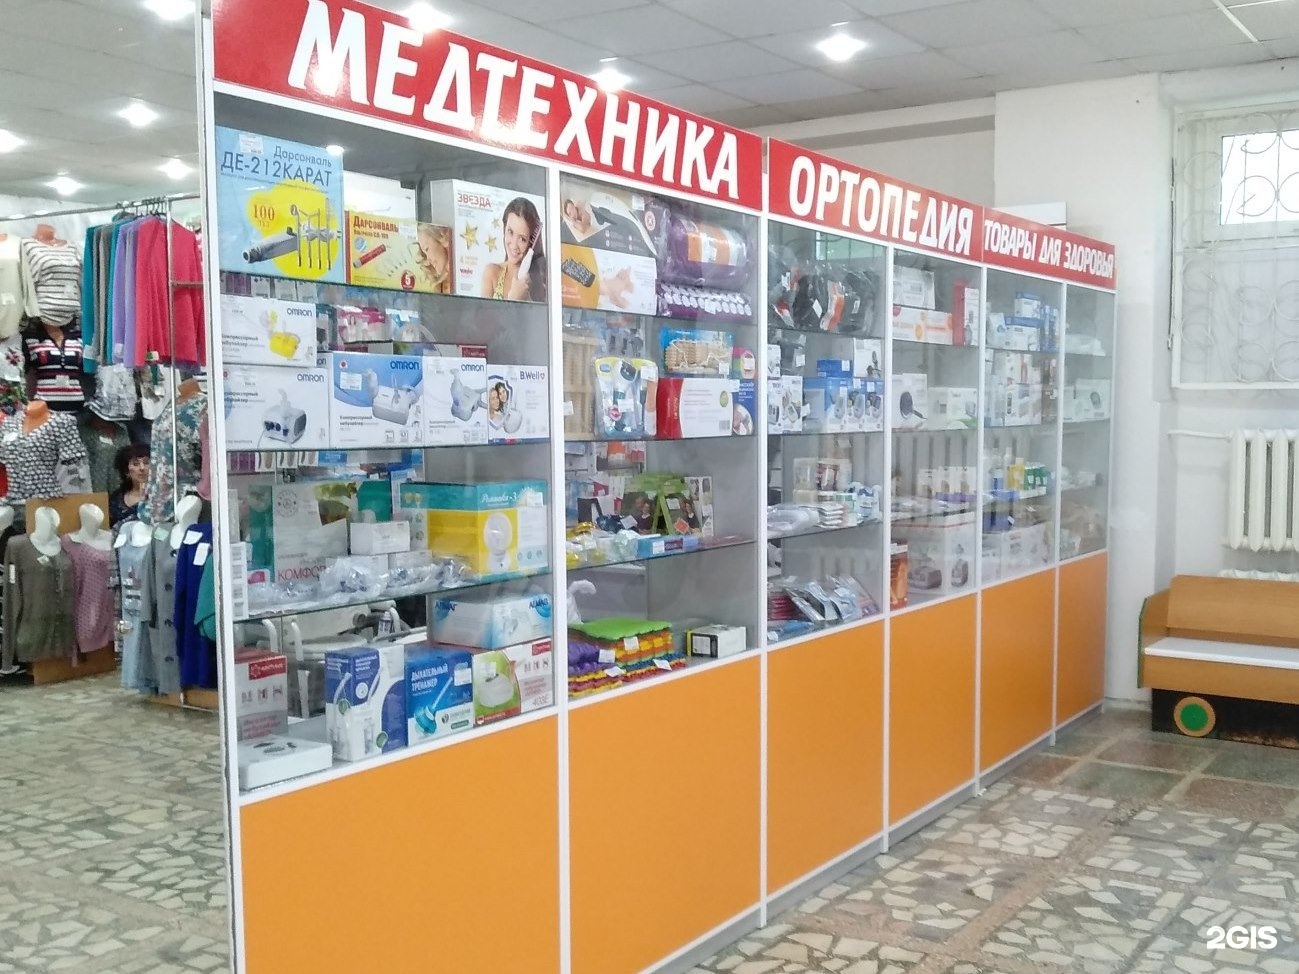 медтехника смоленск каталог товаров фото